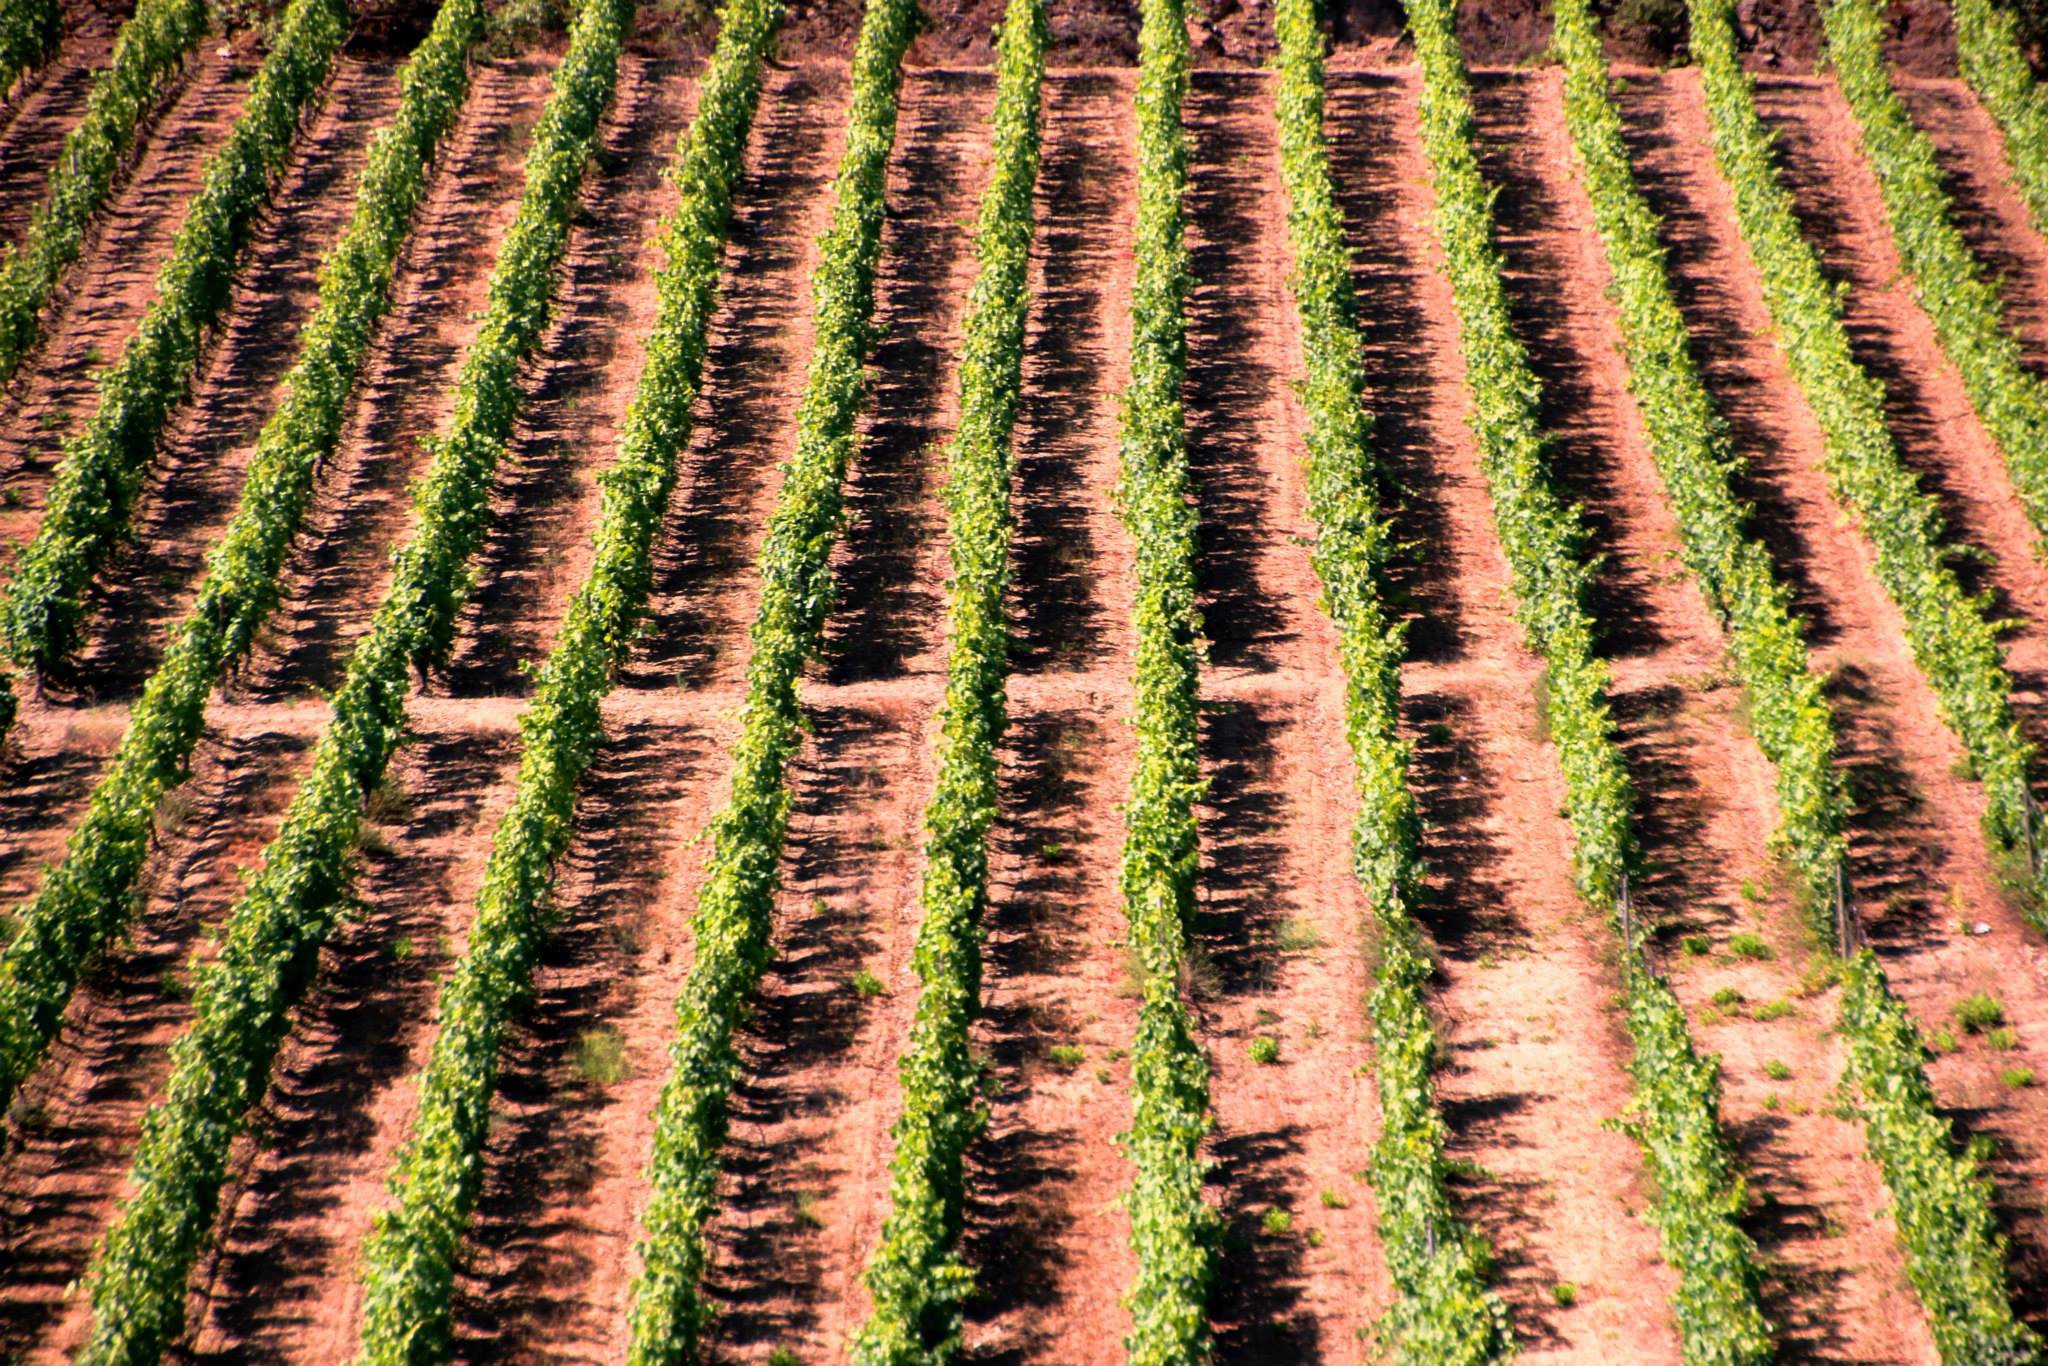 Novas plantações de vinha limitadas 4,2 ha na Região Demarcada do Douro